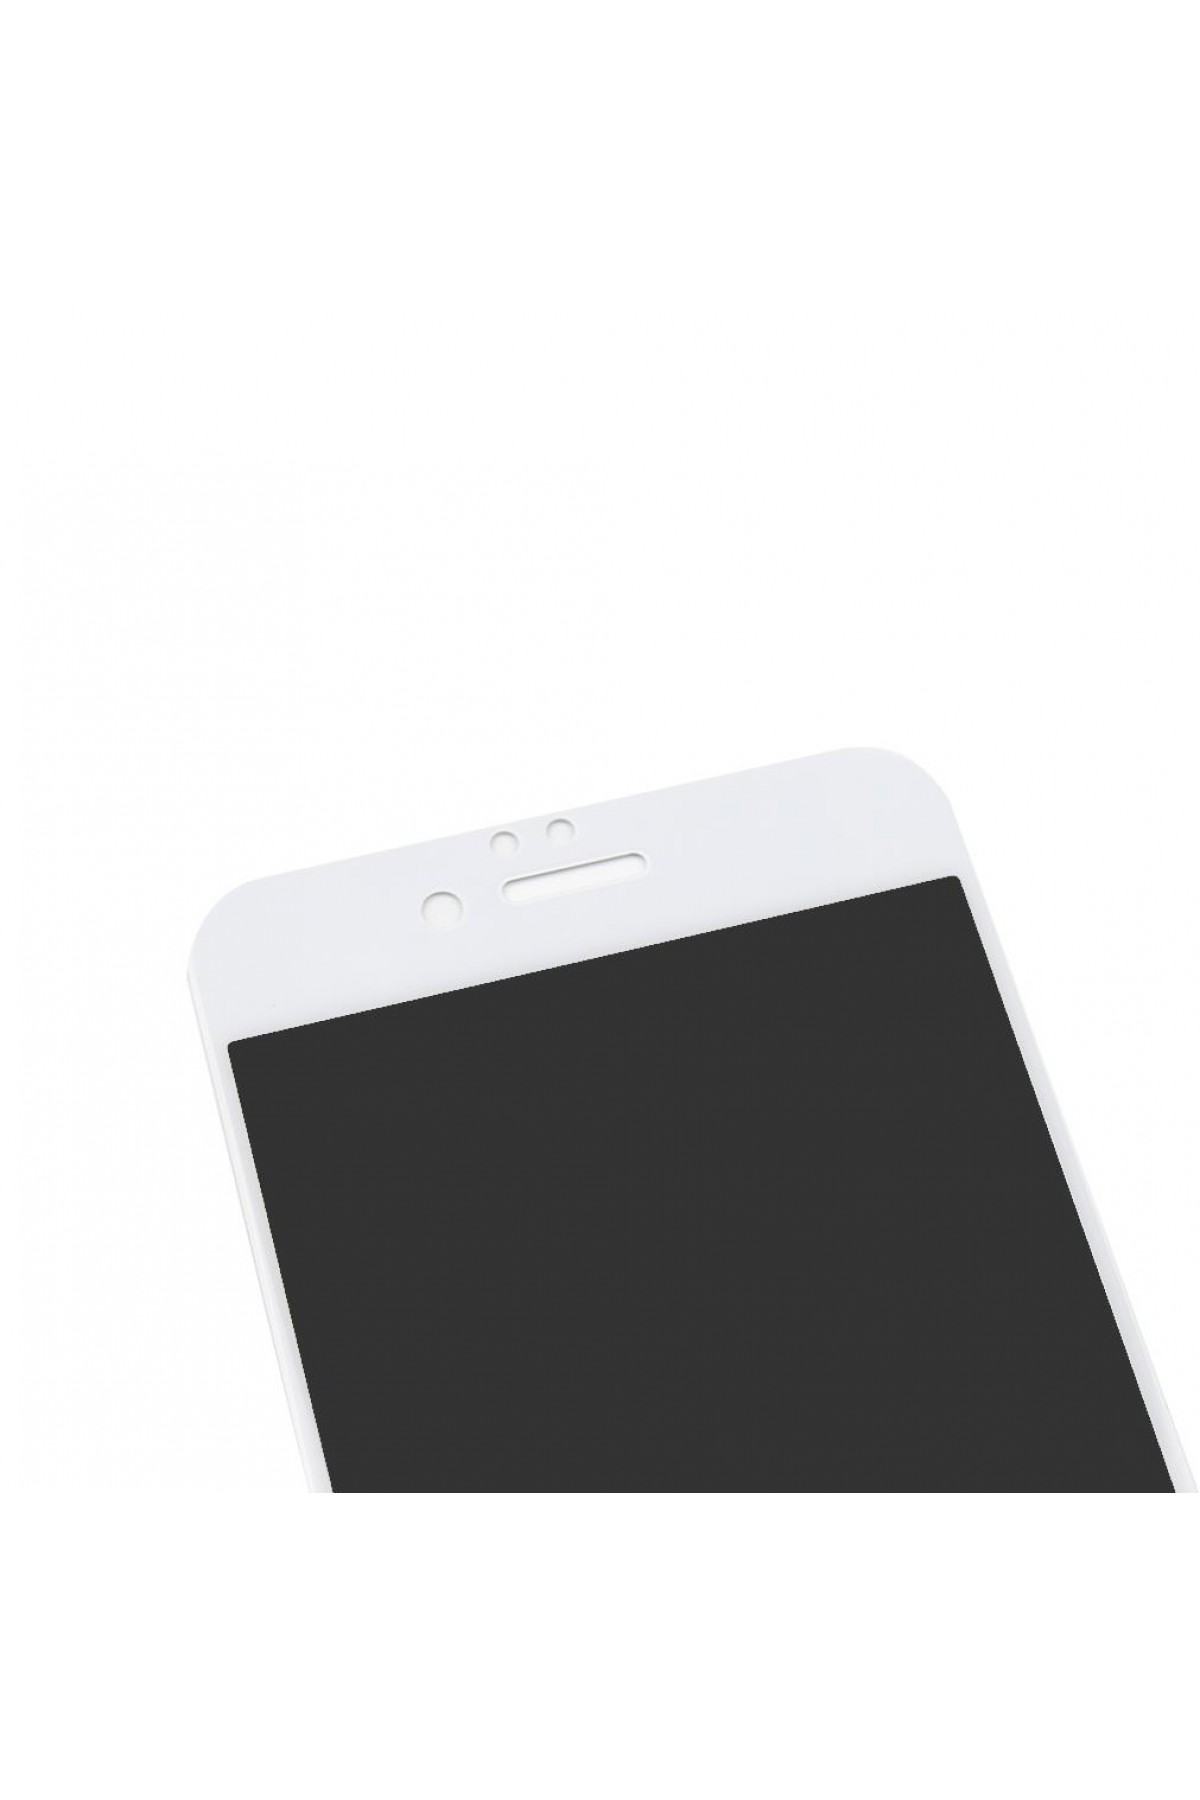 Iphone 6S Ekran Koruyucu Gizli Hayalet Cam Tam Kaplama